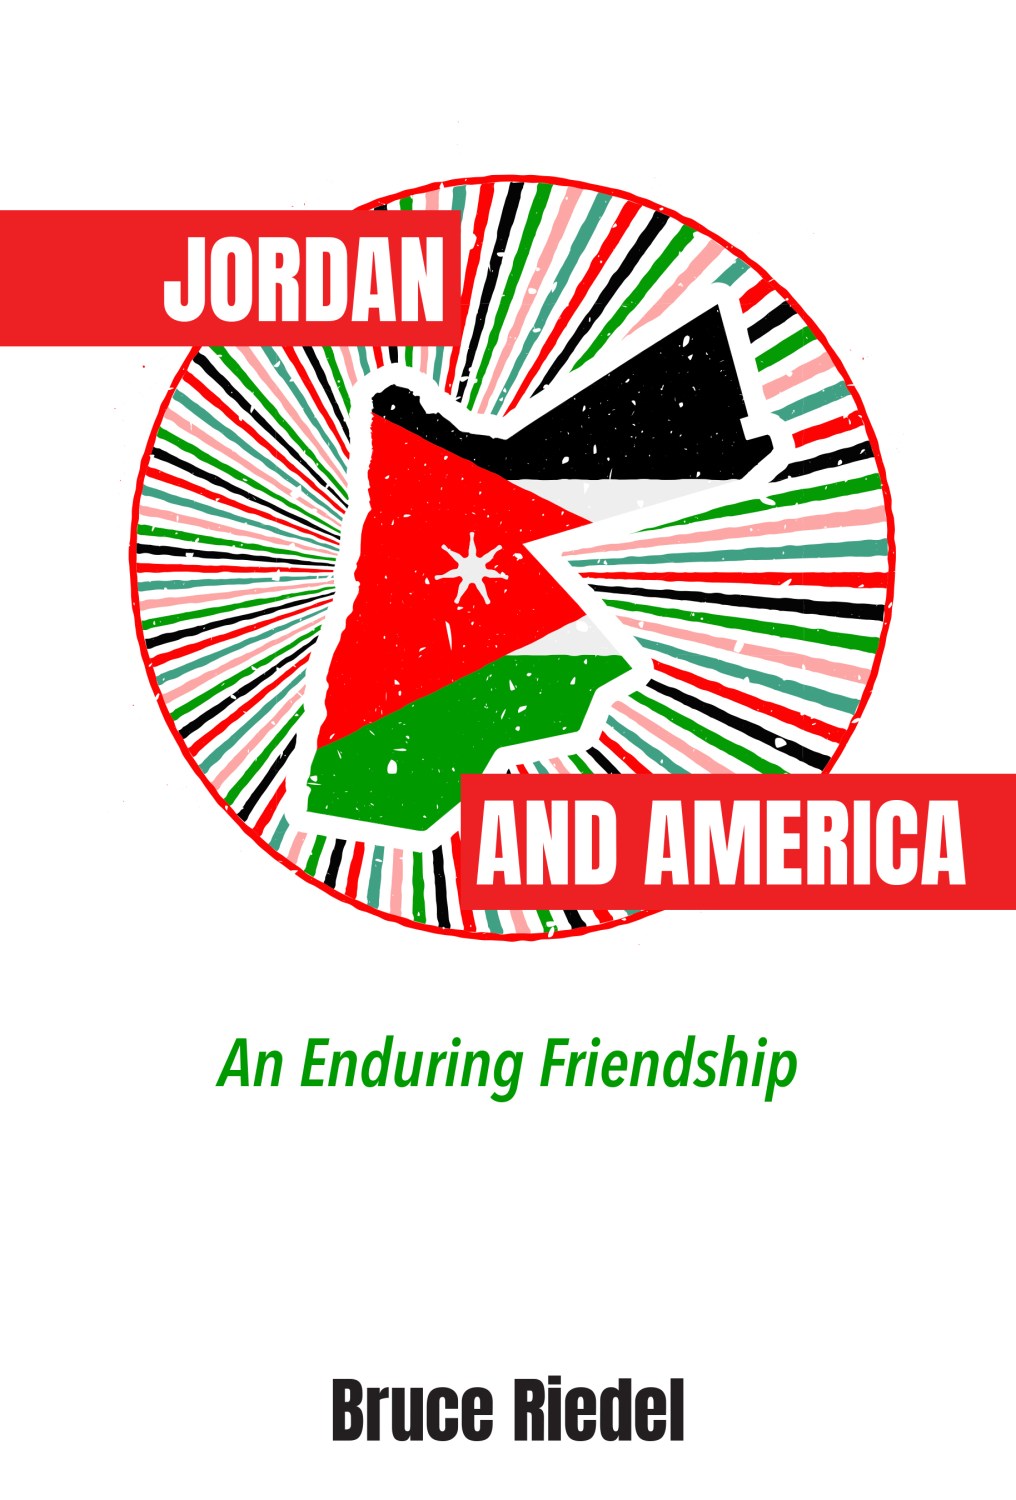 Cvr: America and Jordan